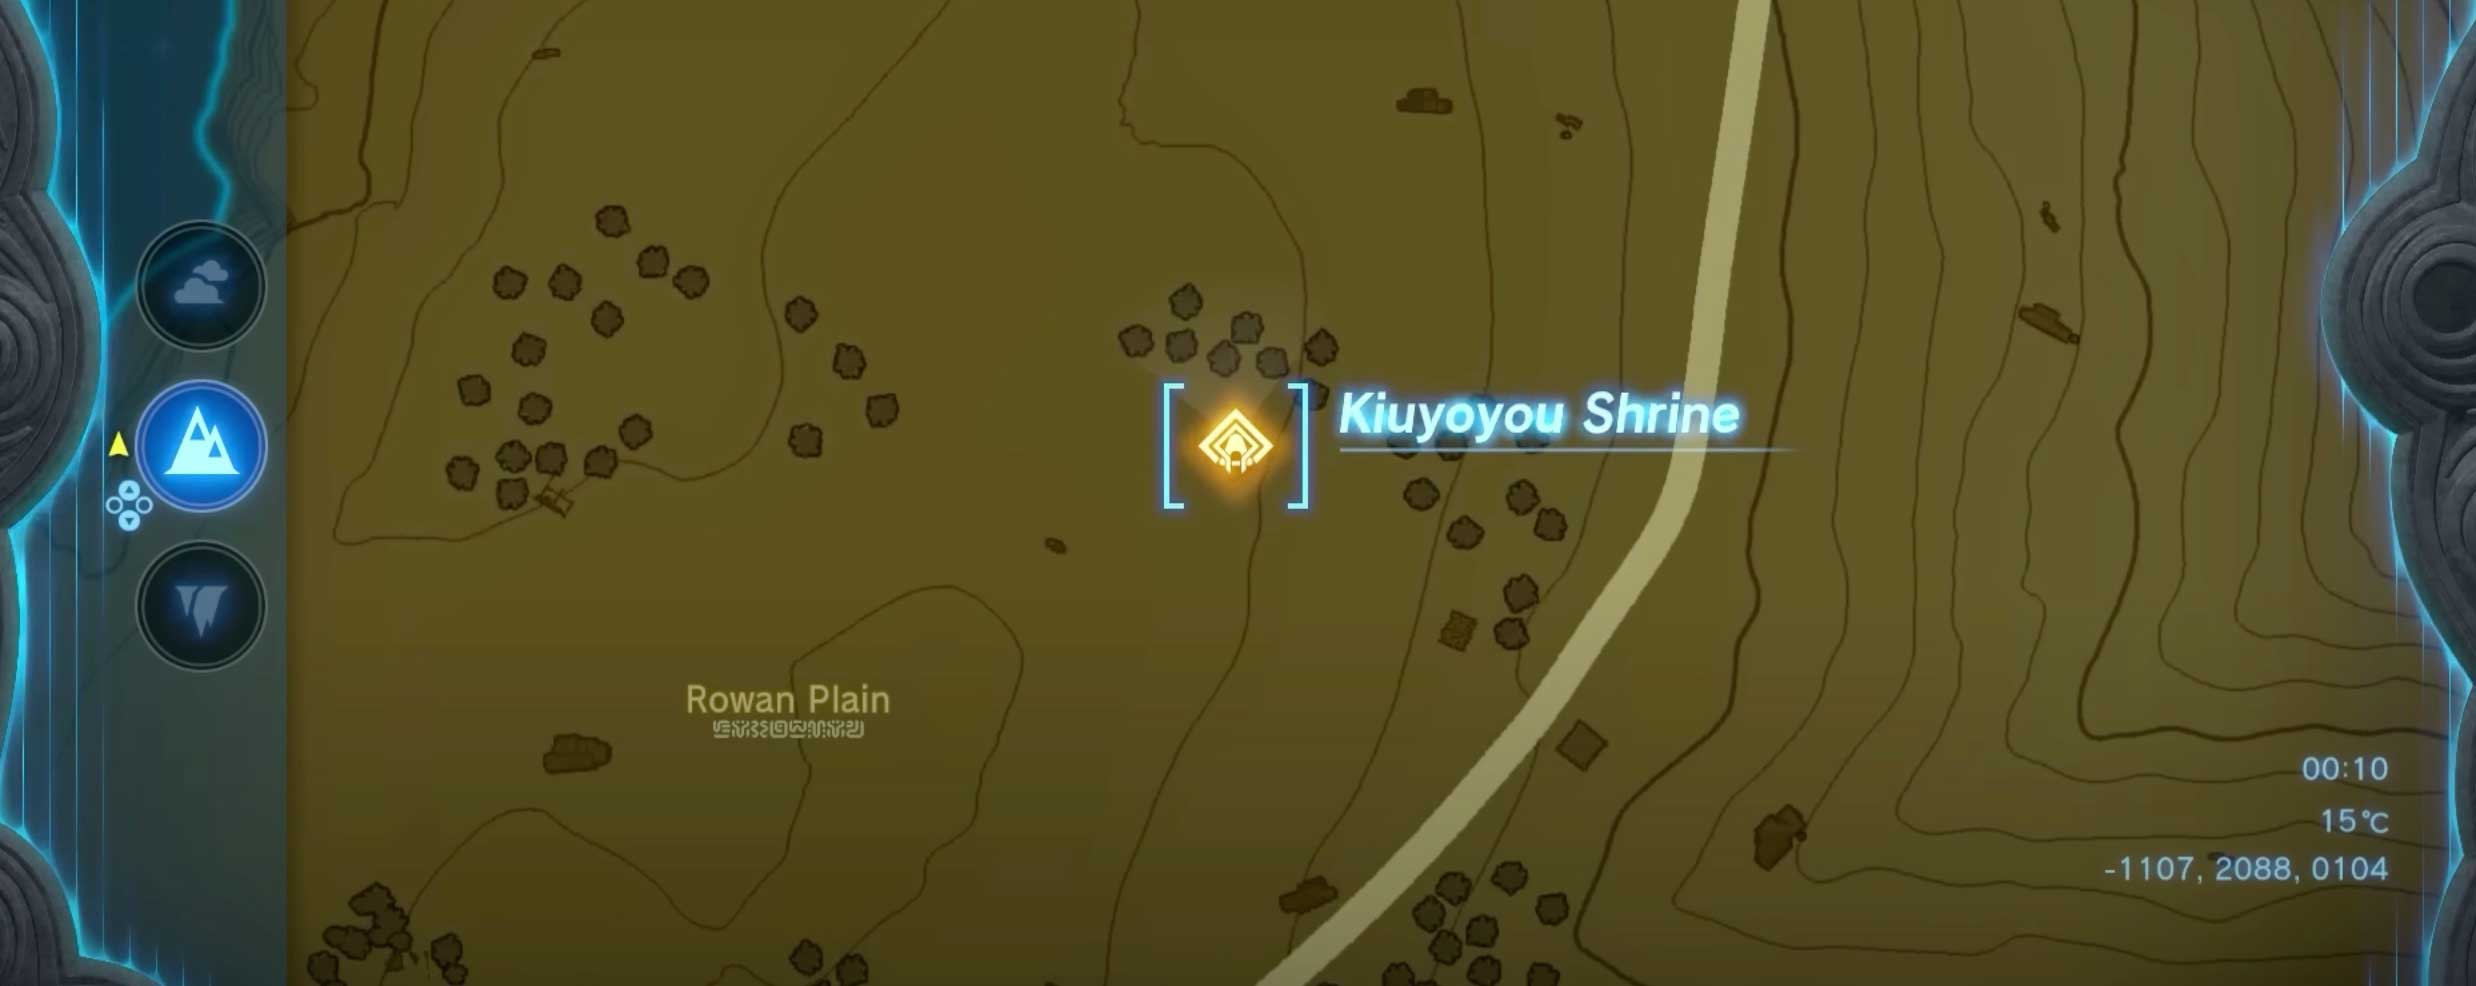 Kiuyoyou Shrine Location Map